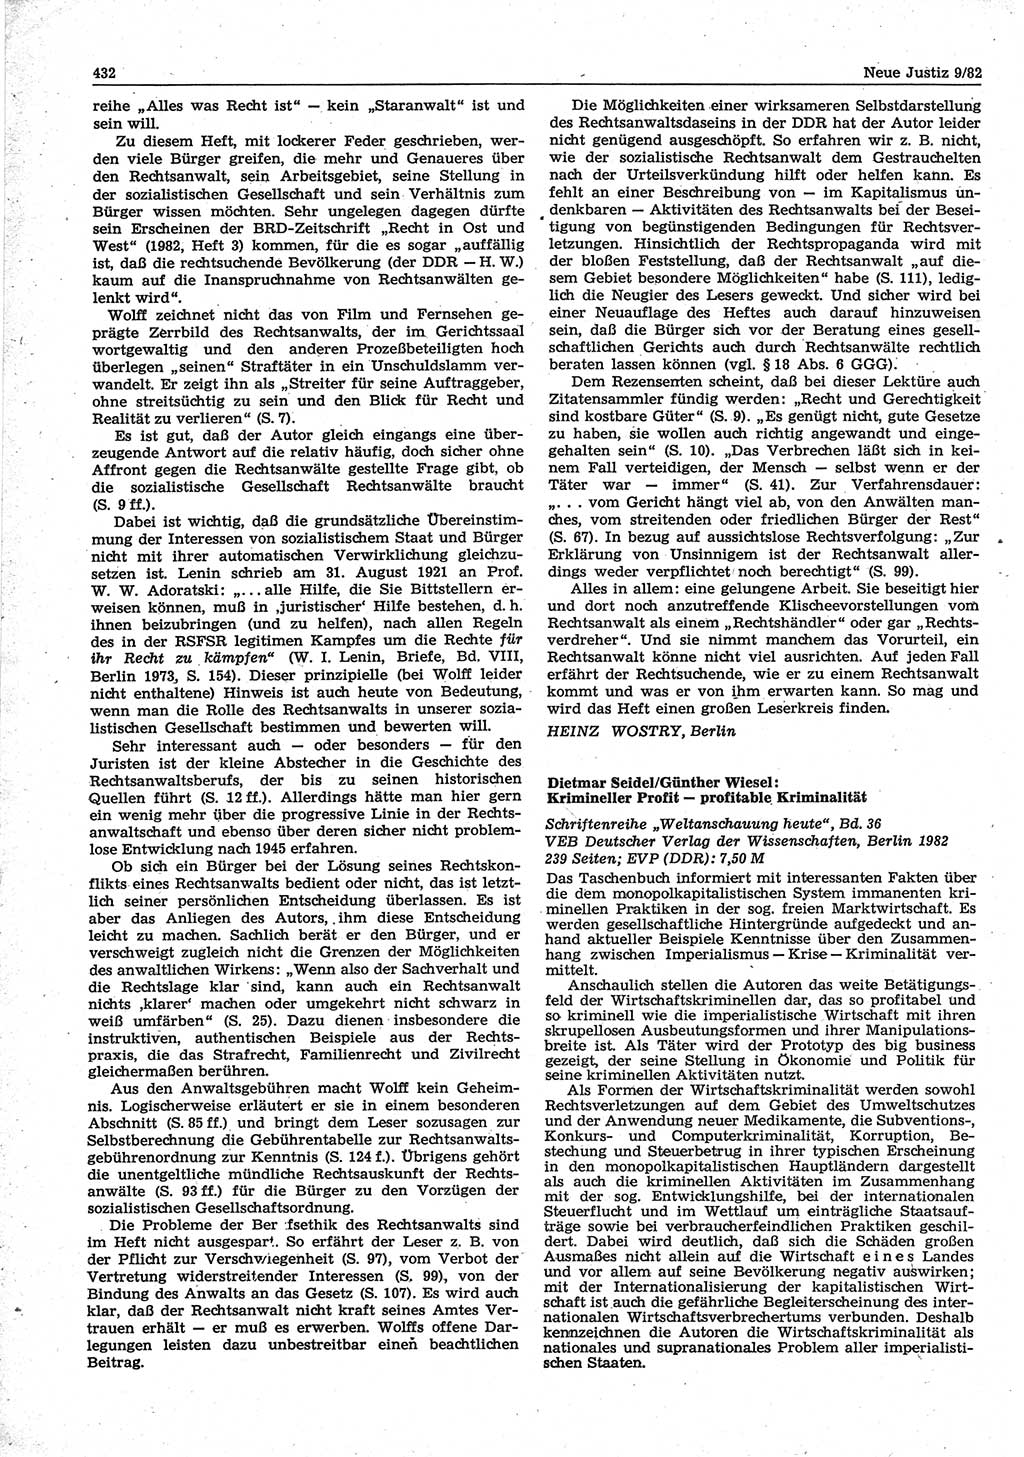 Neue Justiz (NJ), Zeitschrift für sozialistisches Recht und Gesetzlichkeit [Deutsche Demokratische Republik (DDR)], 36. Jahrgang 1982, Seite 432 (NJ DDR 1982, S. 432)